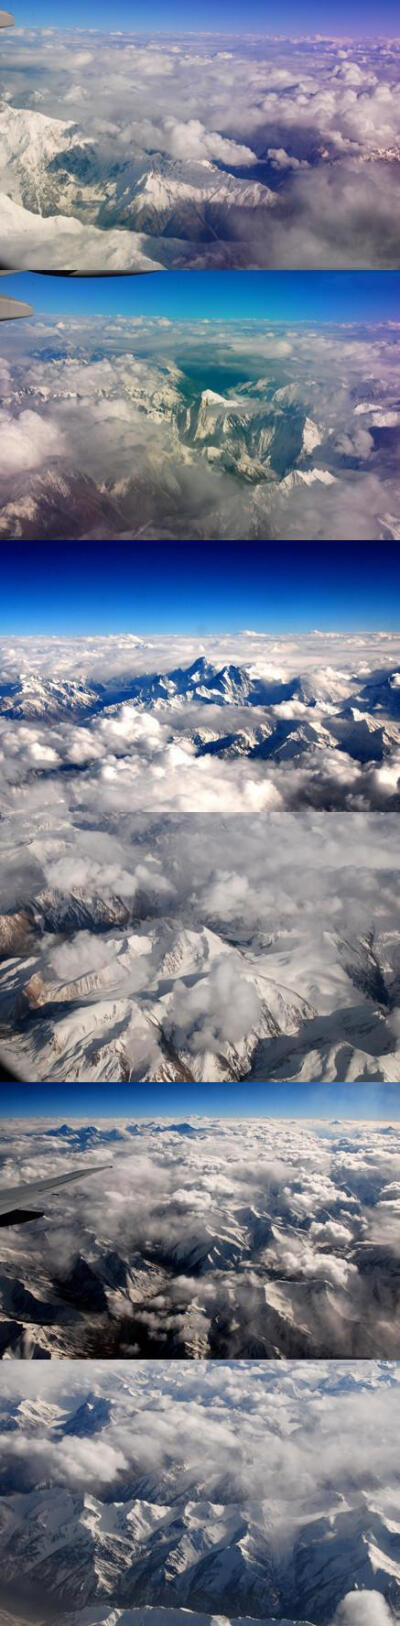 【云南 航拍梅里雪山】山和雪的完美结合是如此神圣。酷旅图 http://www.coollvtu.com